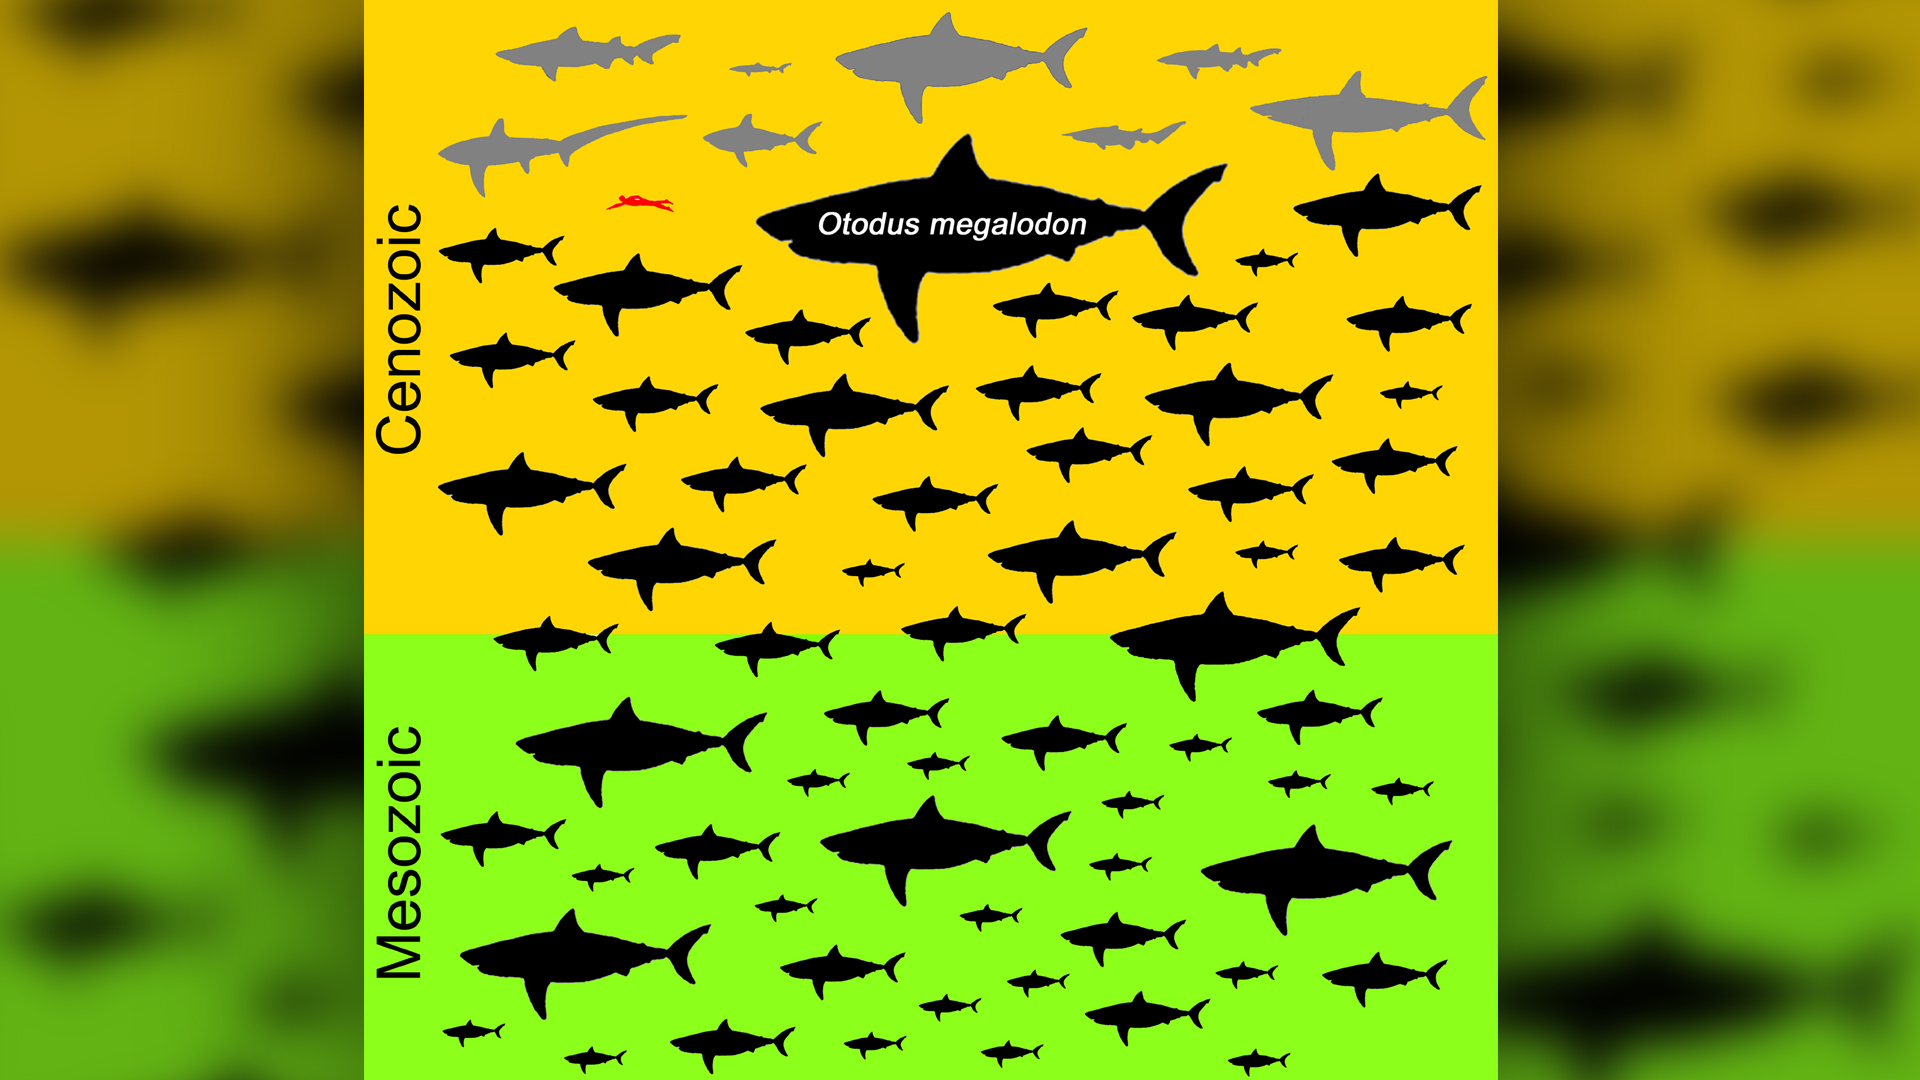 shark genera sizes and megalodon